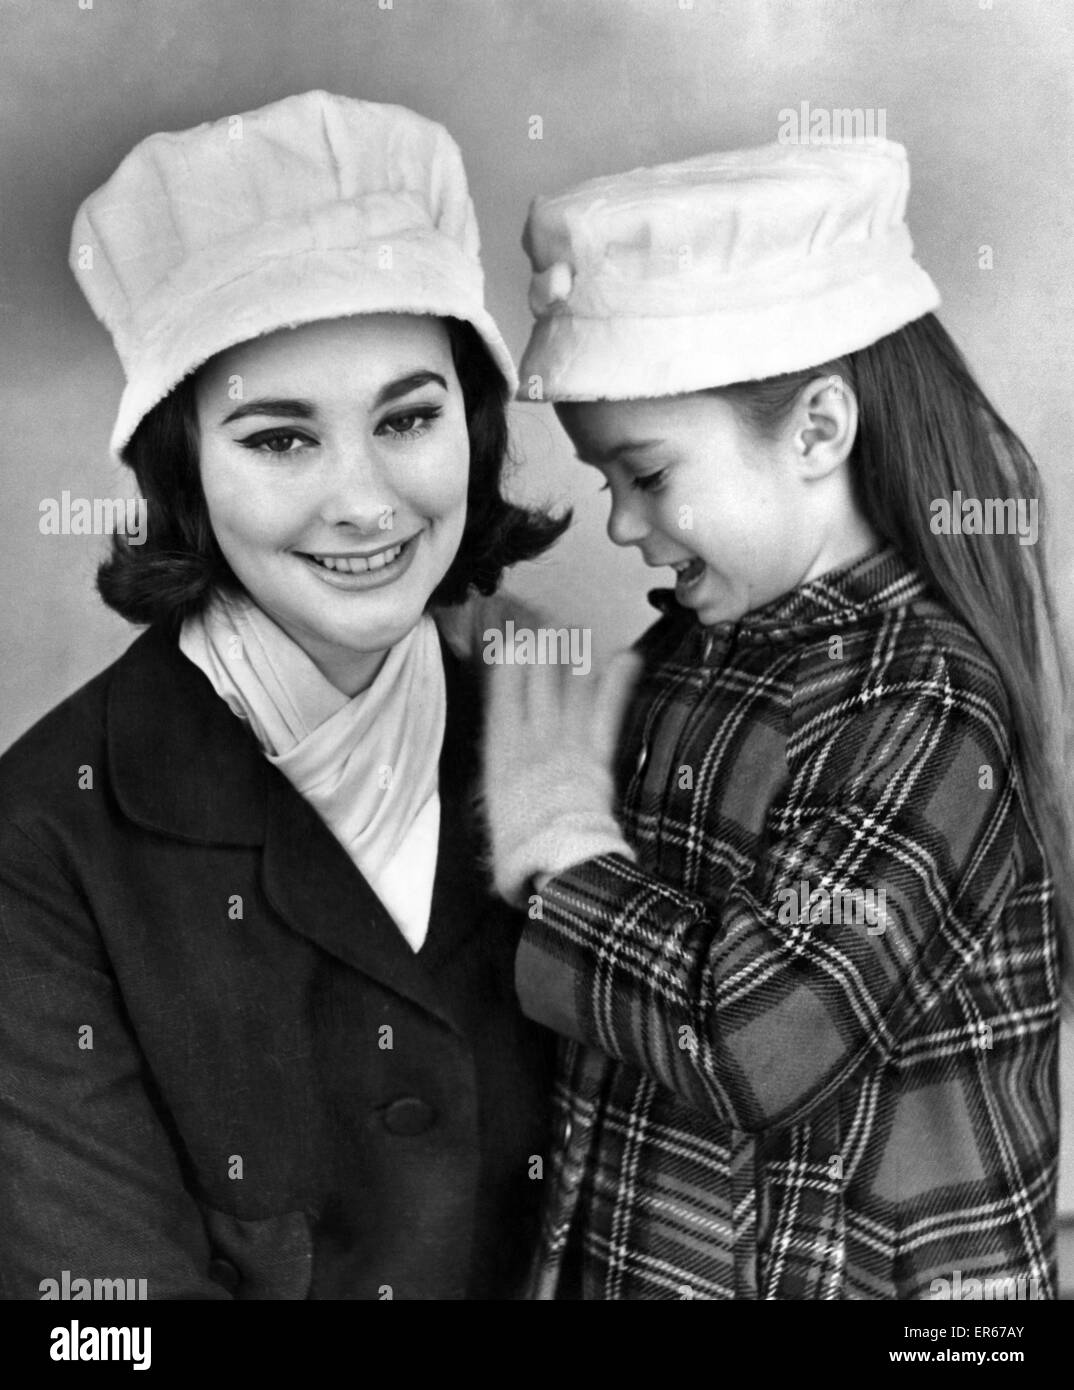 Abbigliamento: Cappelli 1959. Cappelli per bambine guardare come cappelli  per le grandi ragazze in questi giorni. Così molte figlie insistere su  indossando la stessa come Madre che alcuni produttori di hat stanno